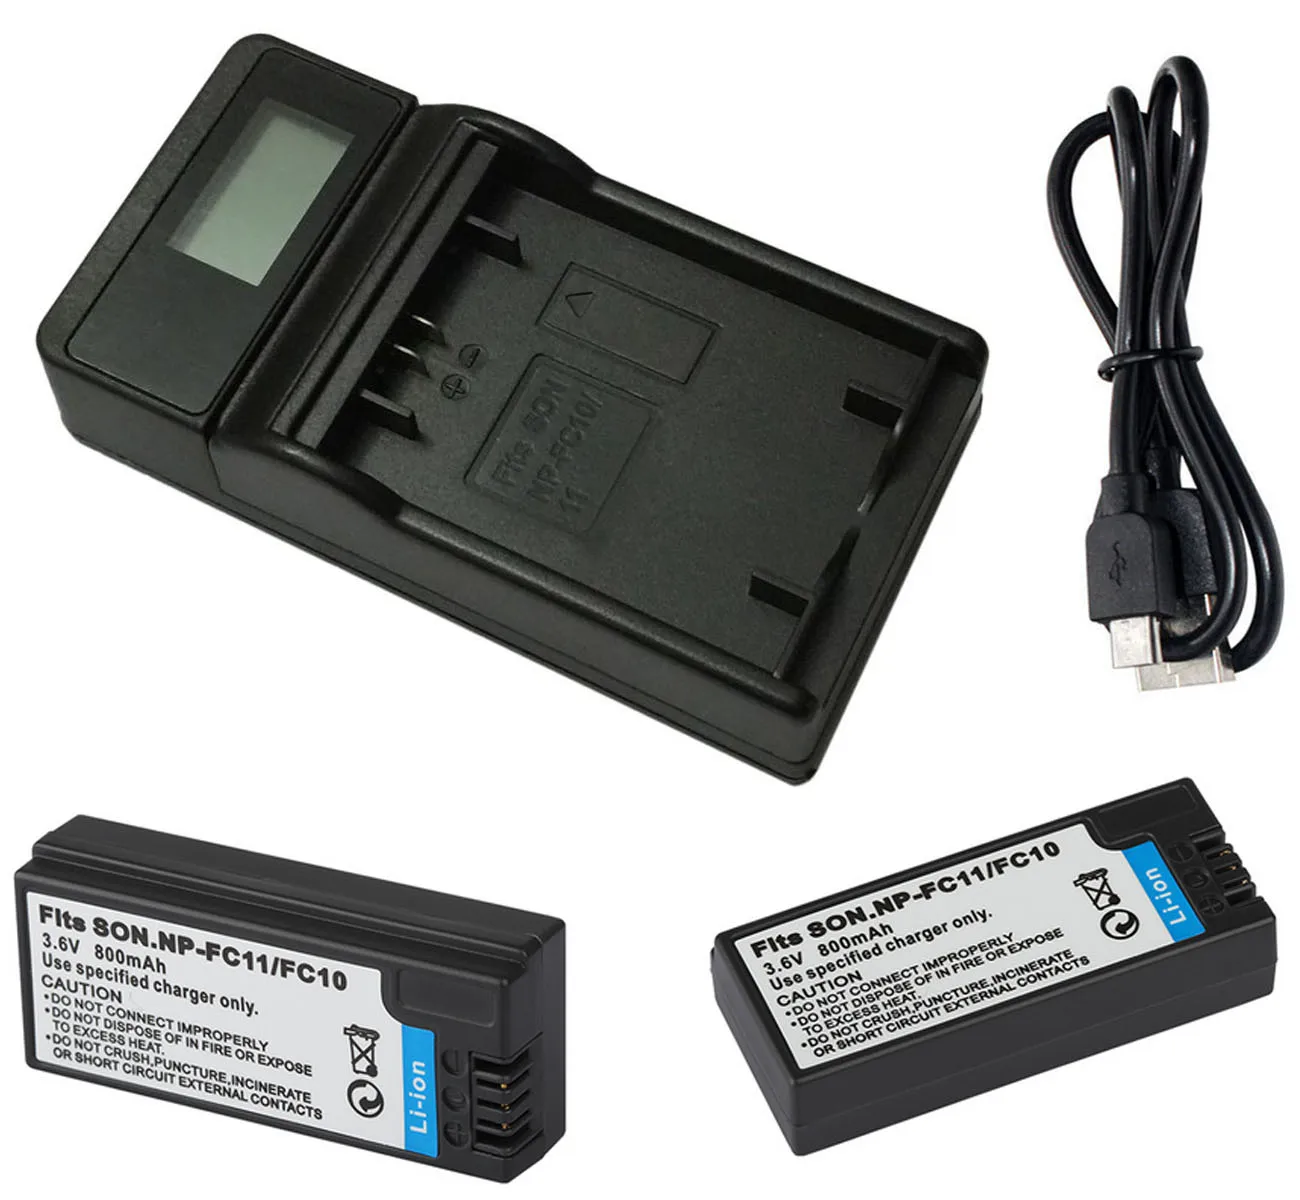 Аккумулятор (2 шт. в упаковке) и зарядное устройство для Sony NP-FC10 NPFC10 NP-FC11 NPFC11 InfoLithium C